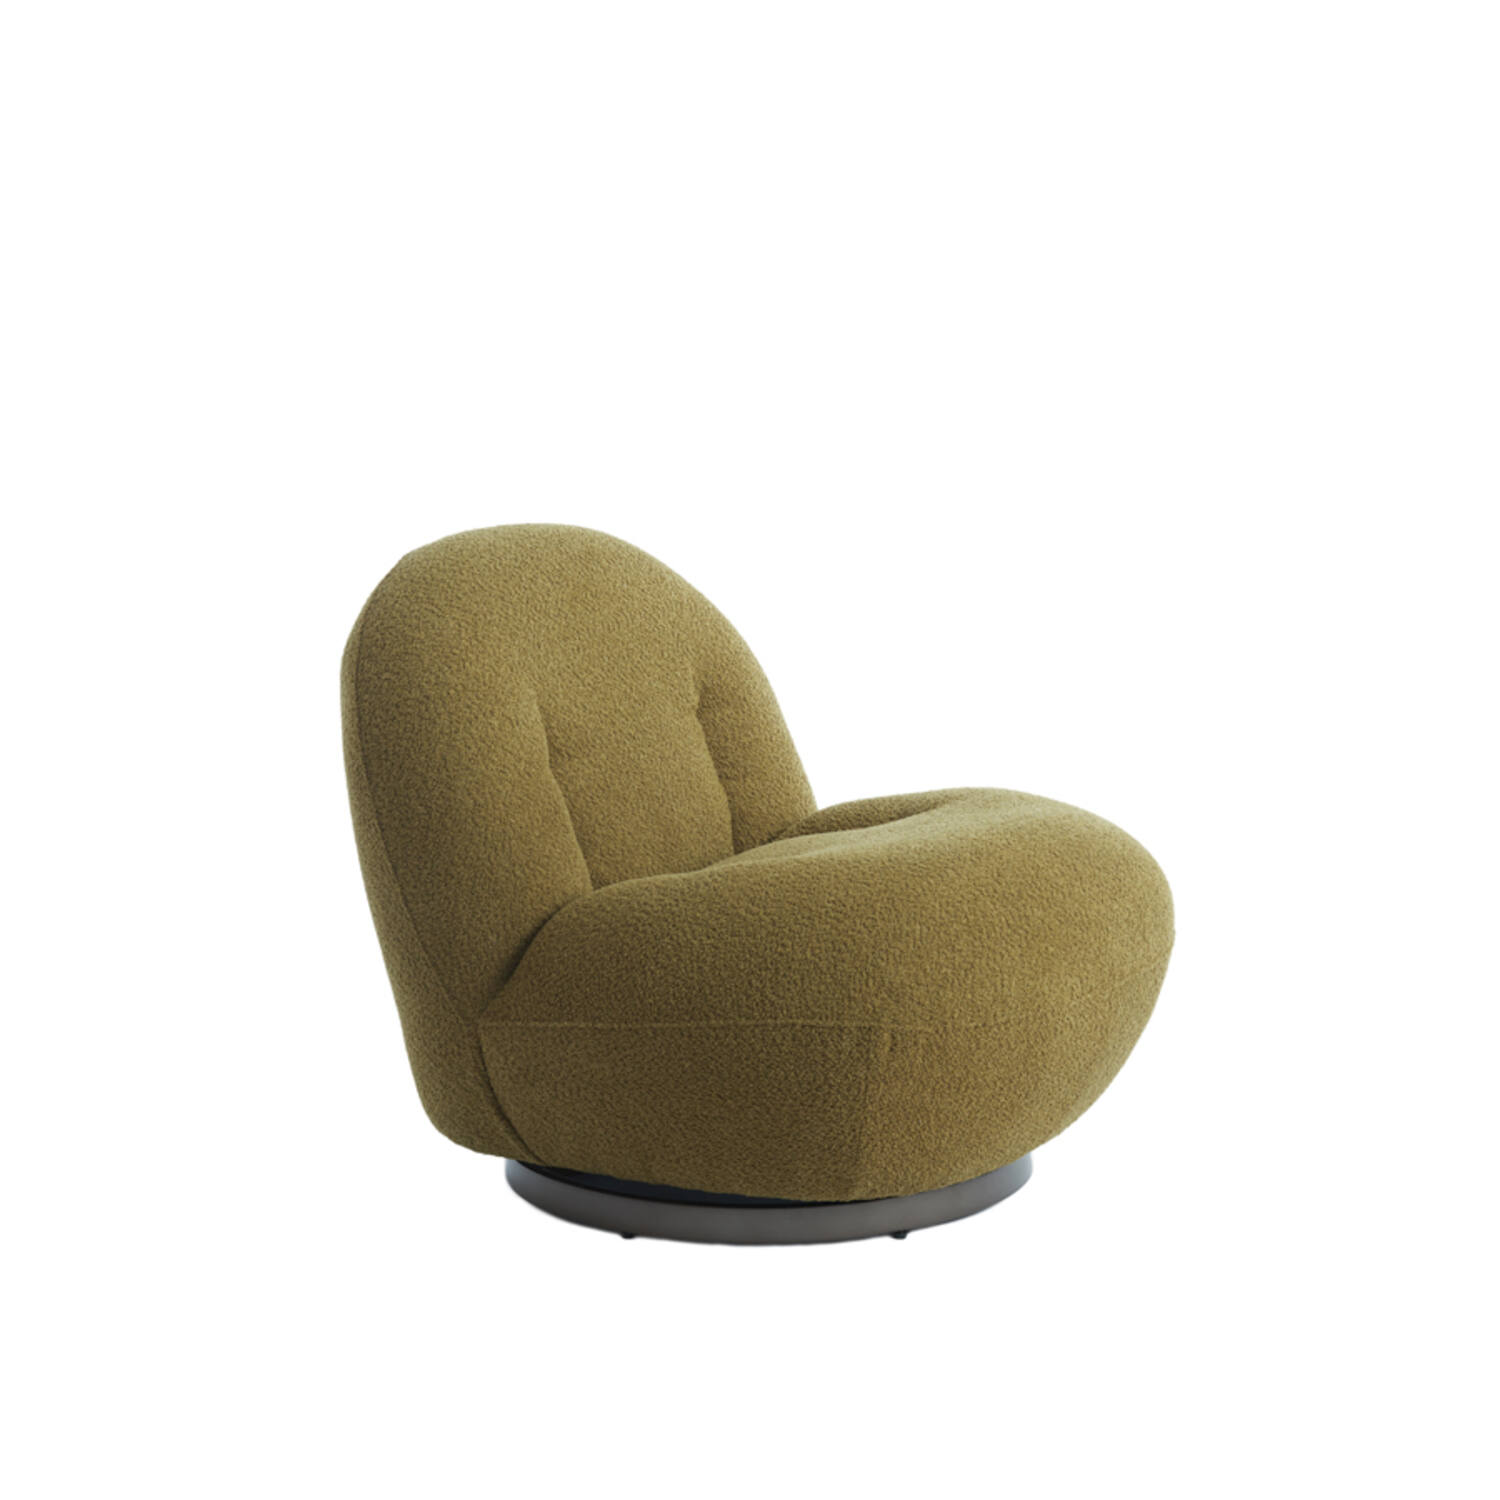 Chair 90x77x72 cm GUMACA bouclé green